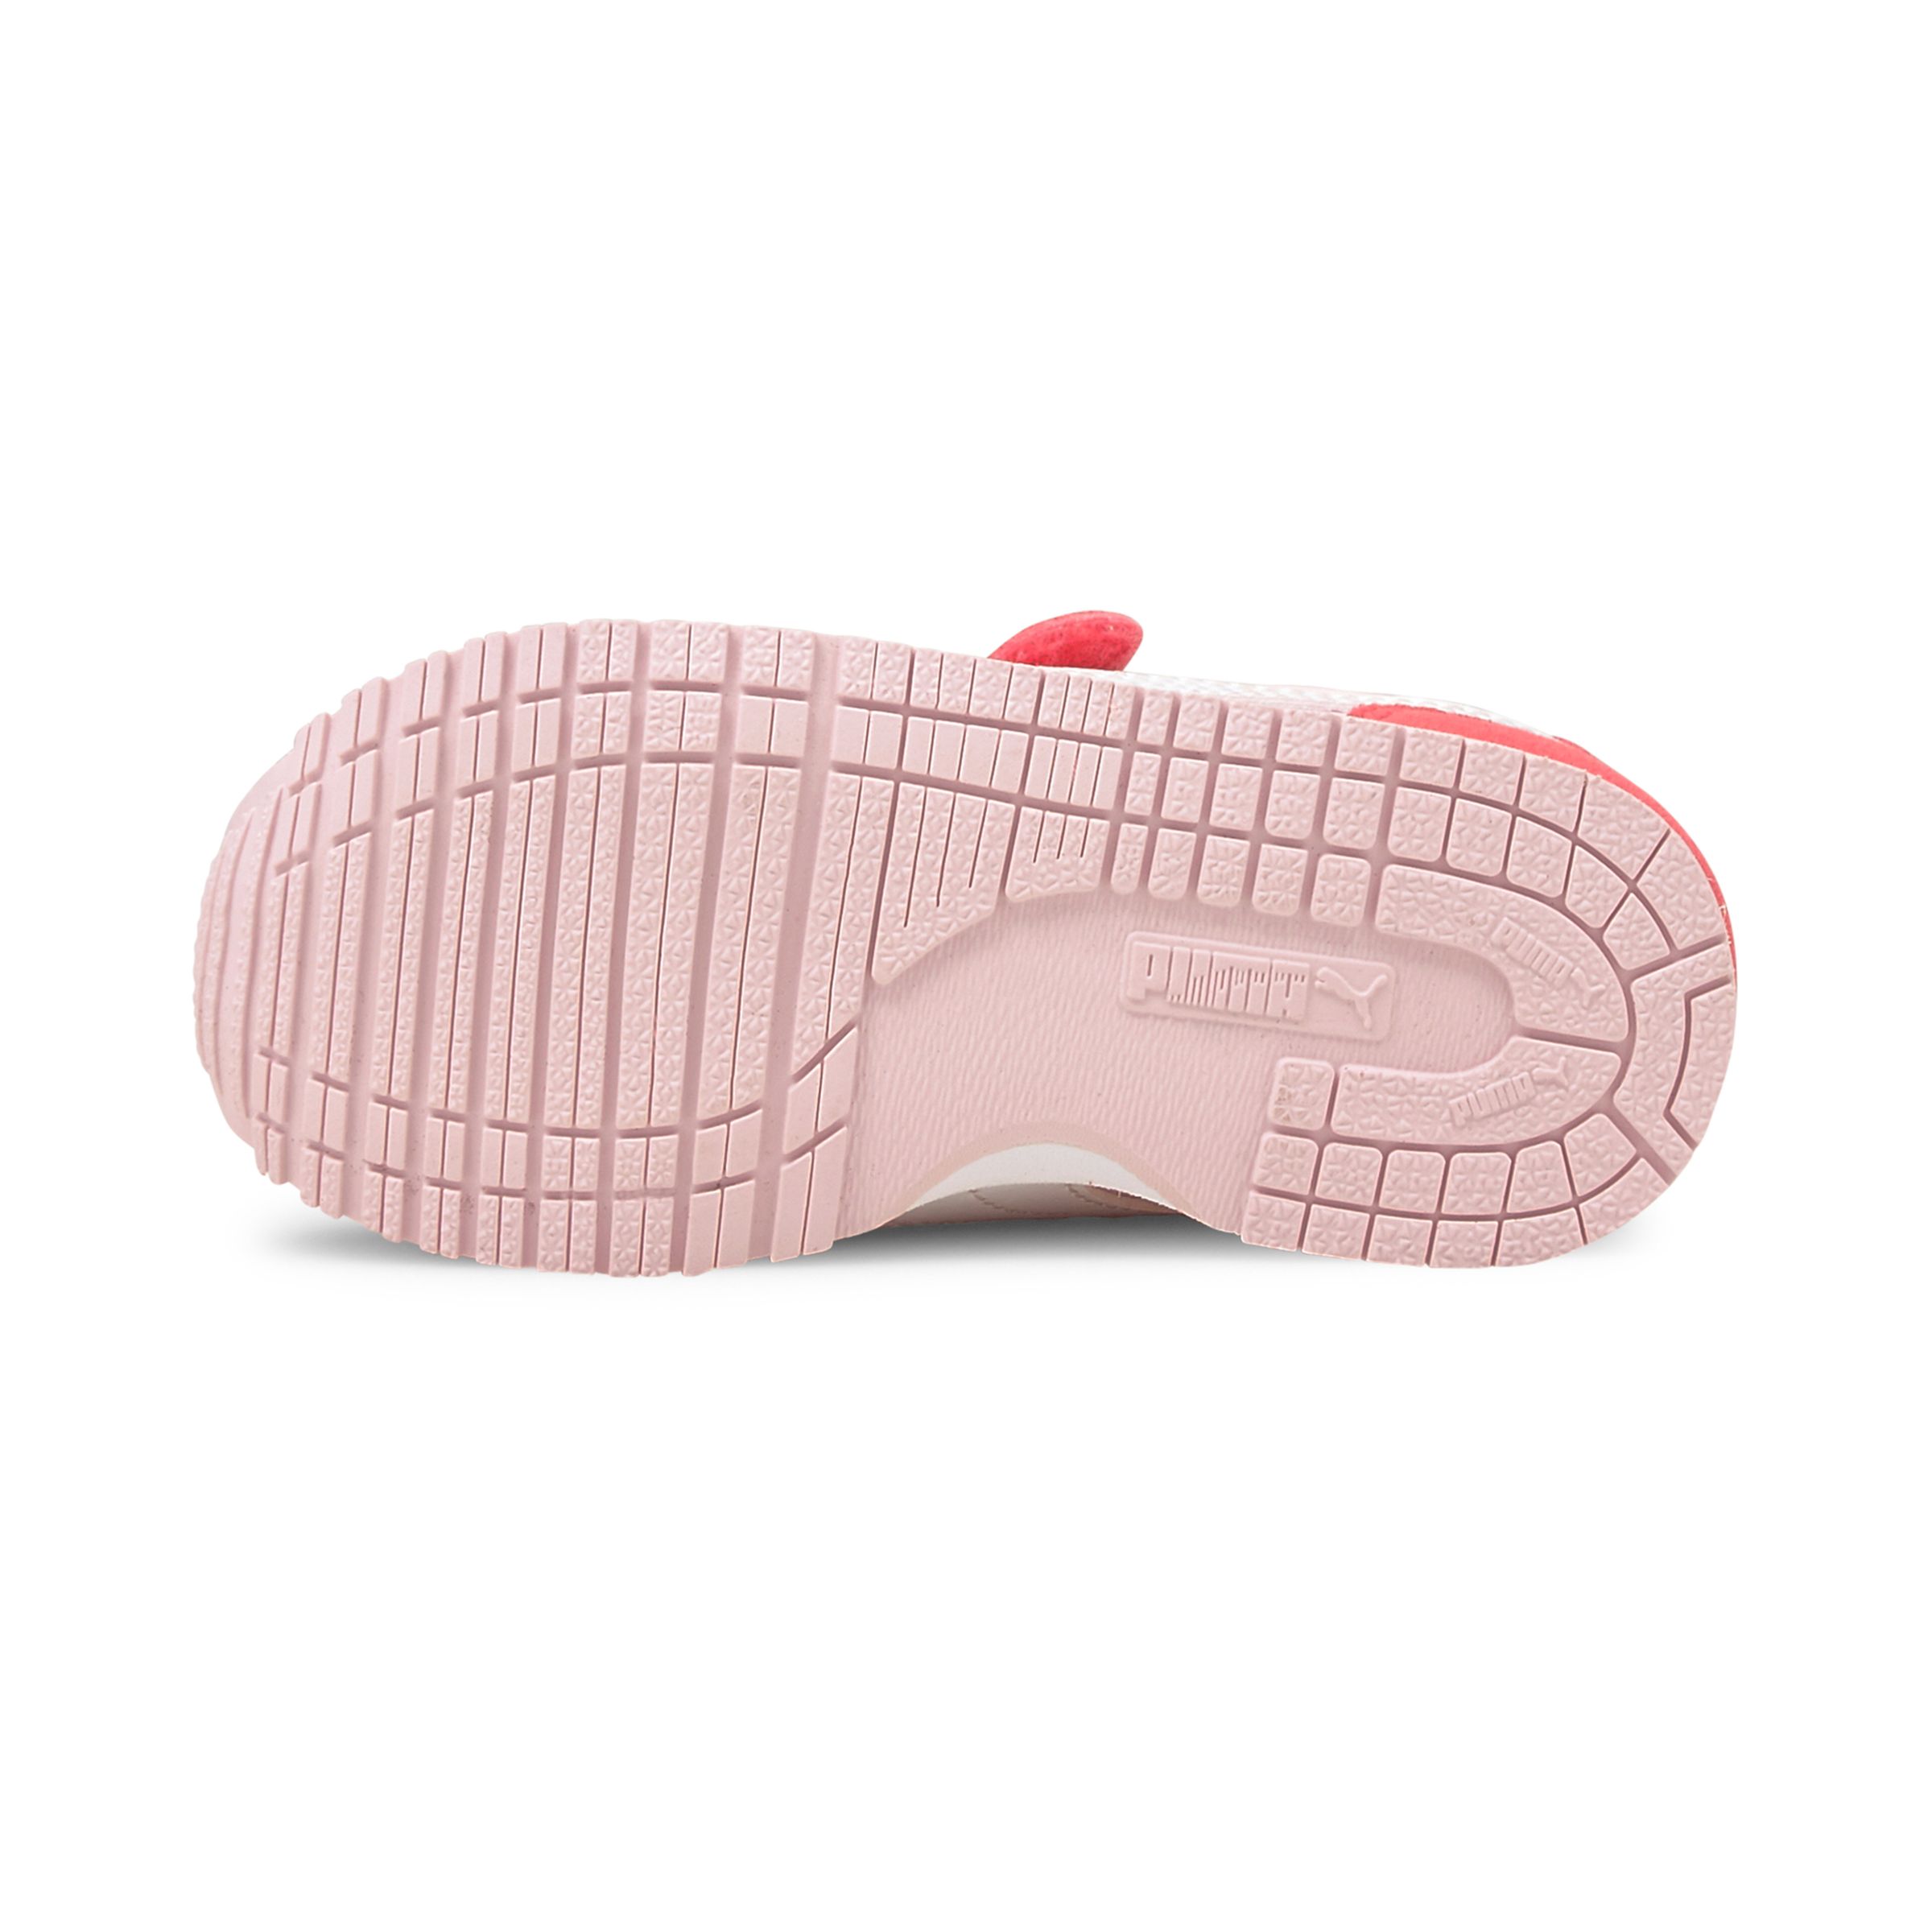 PUMA Cabana Racer SL V Inf Kinder Sneaker Klettverschluss pink 351980